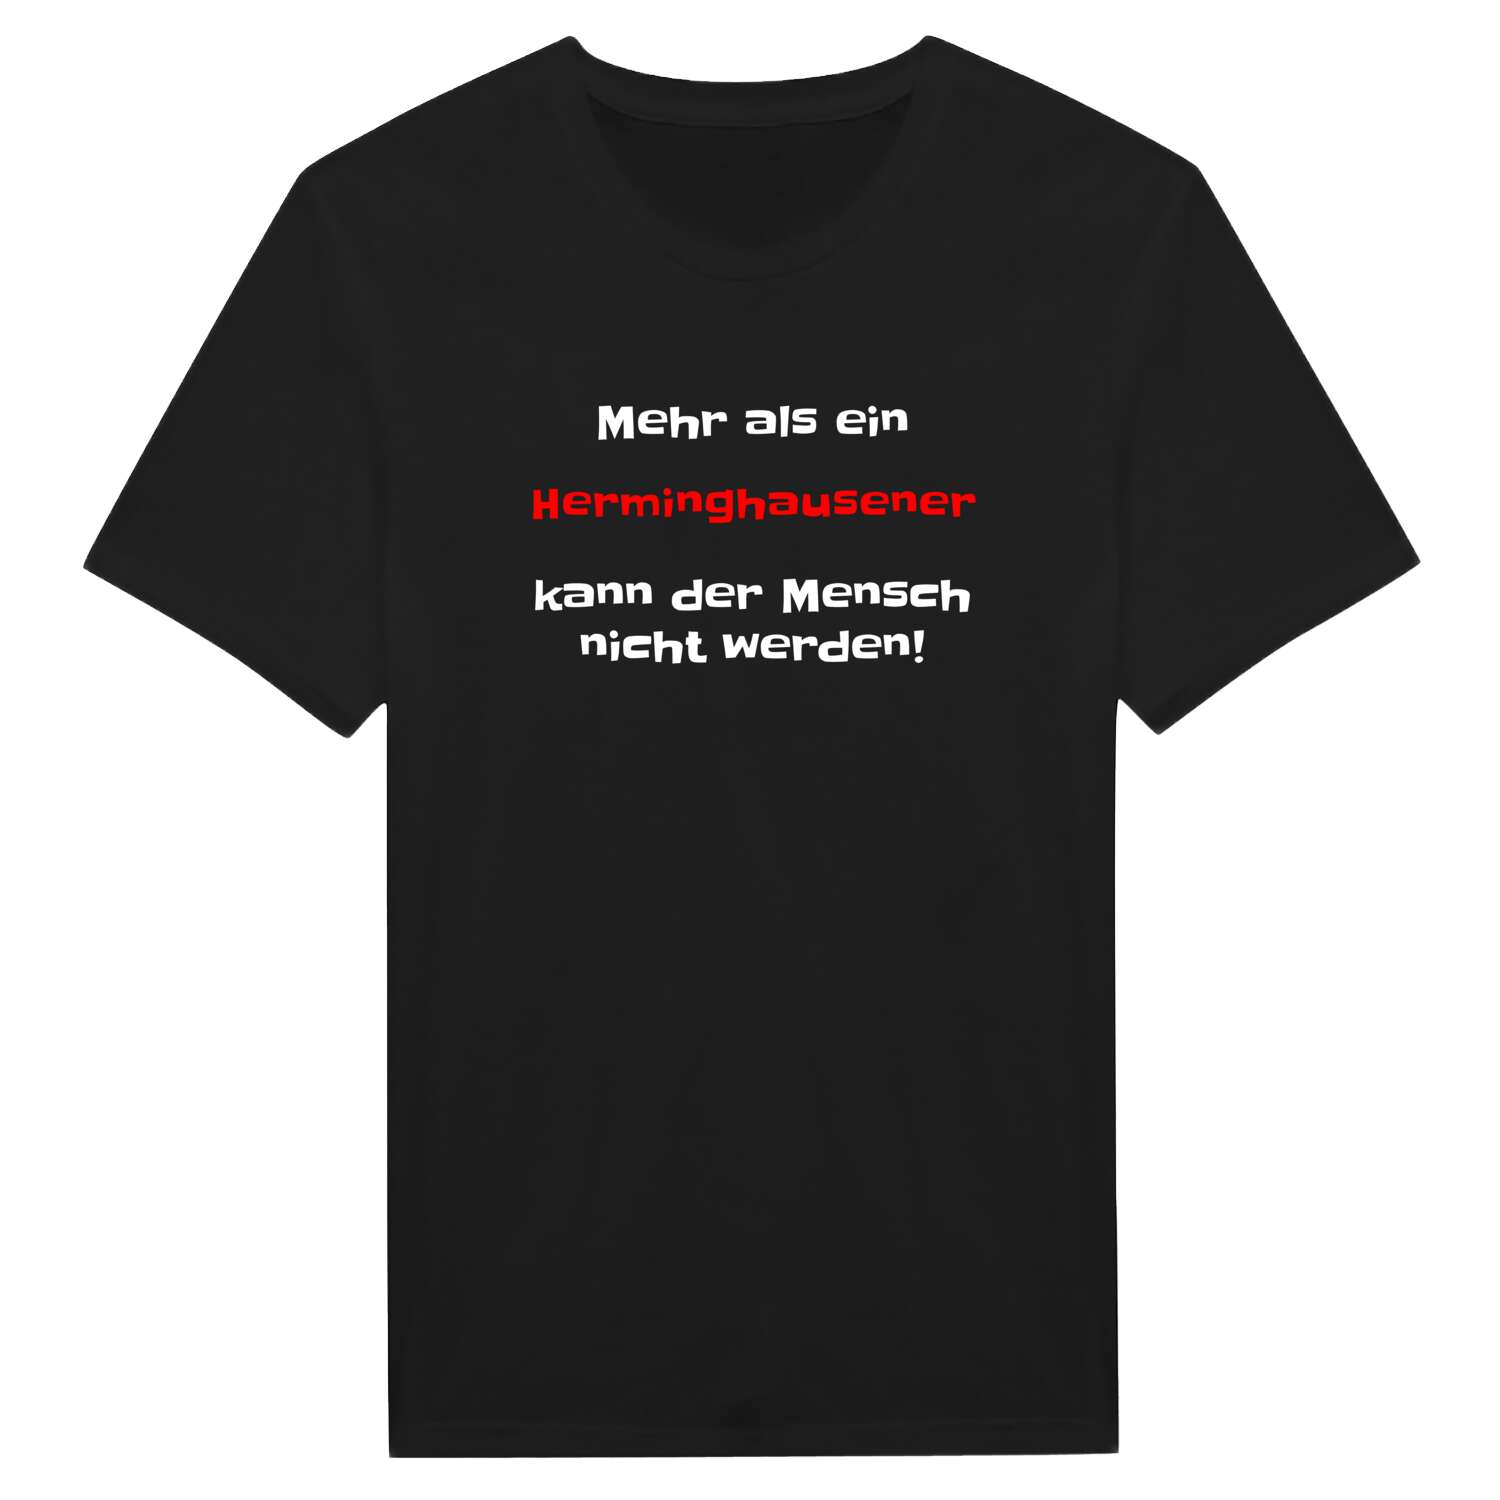 Herminghausen T-Shirt »Mehr als ein«